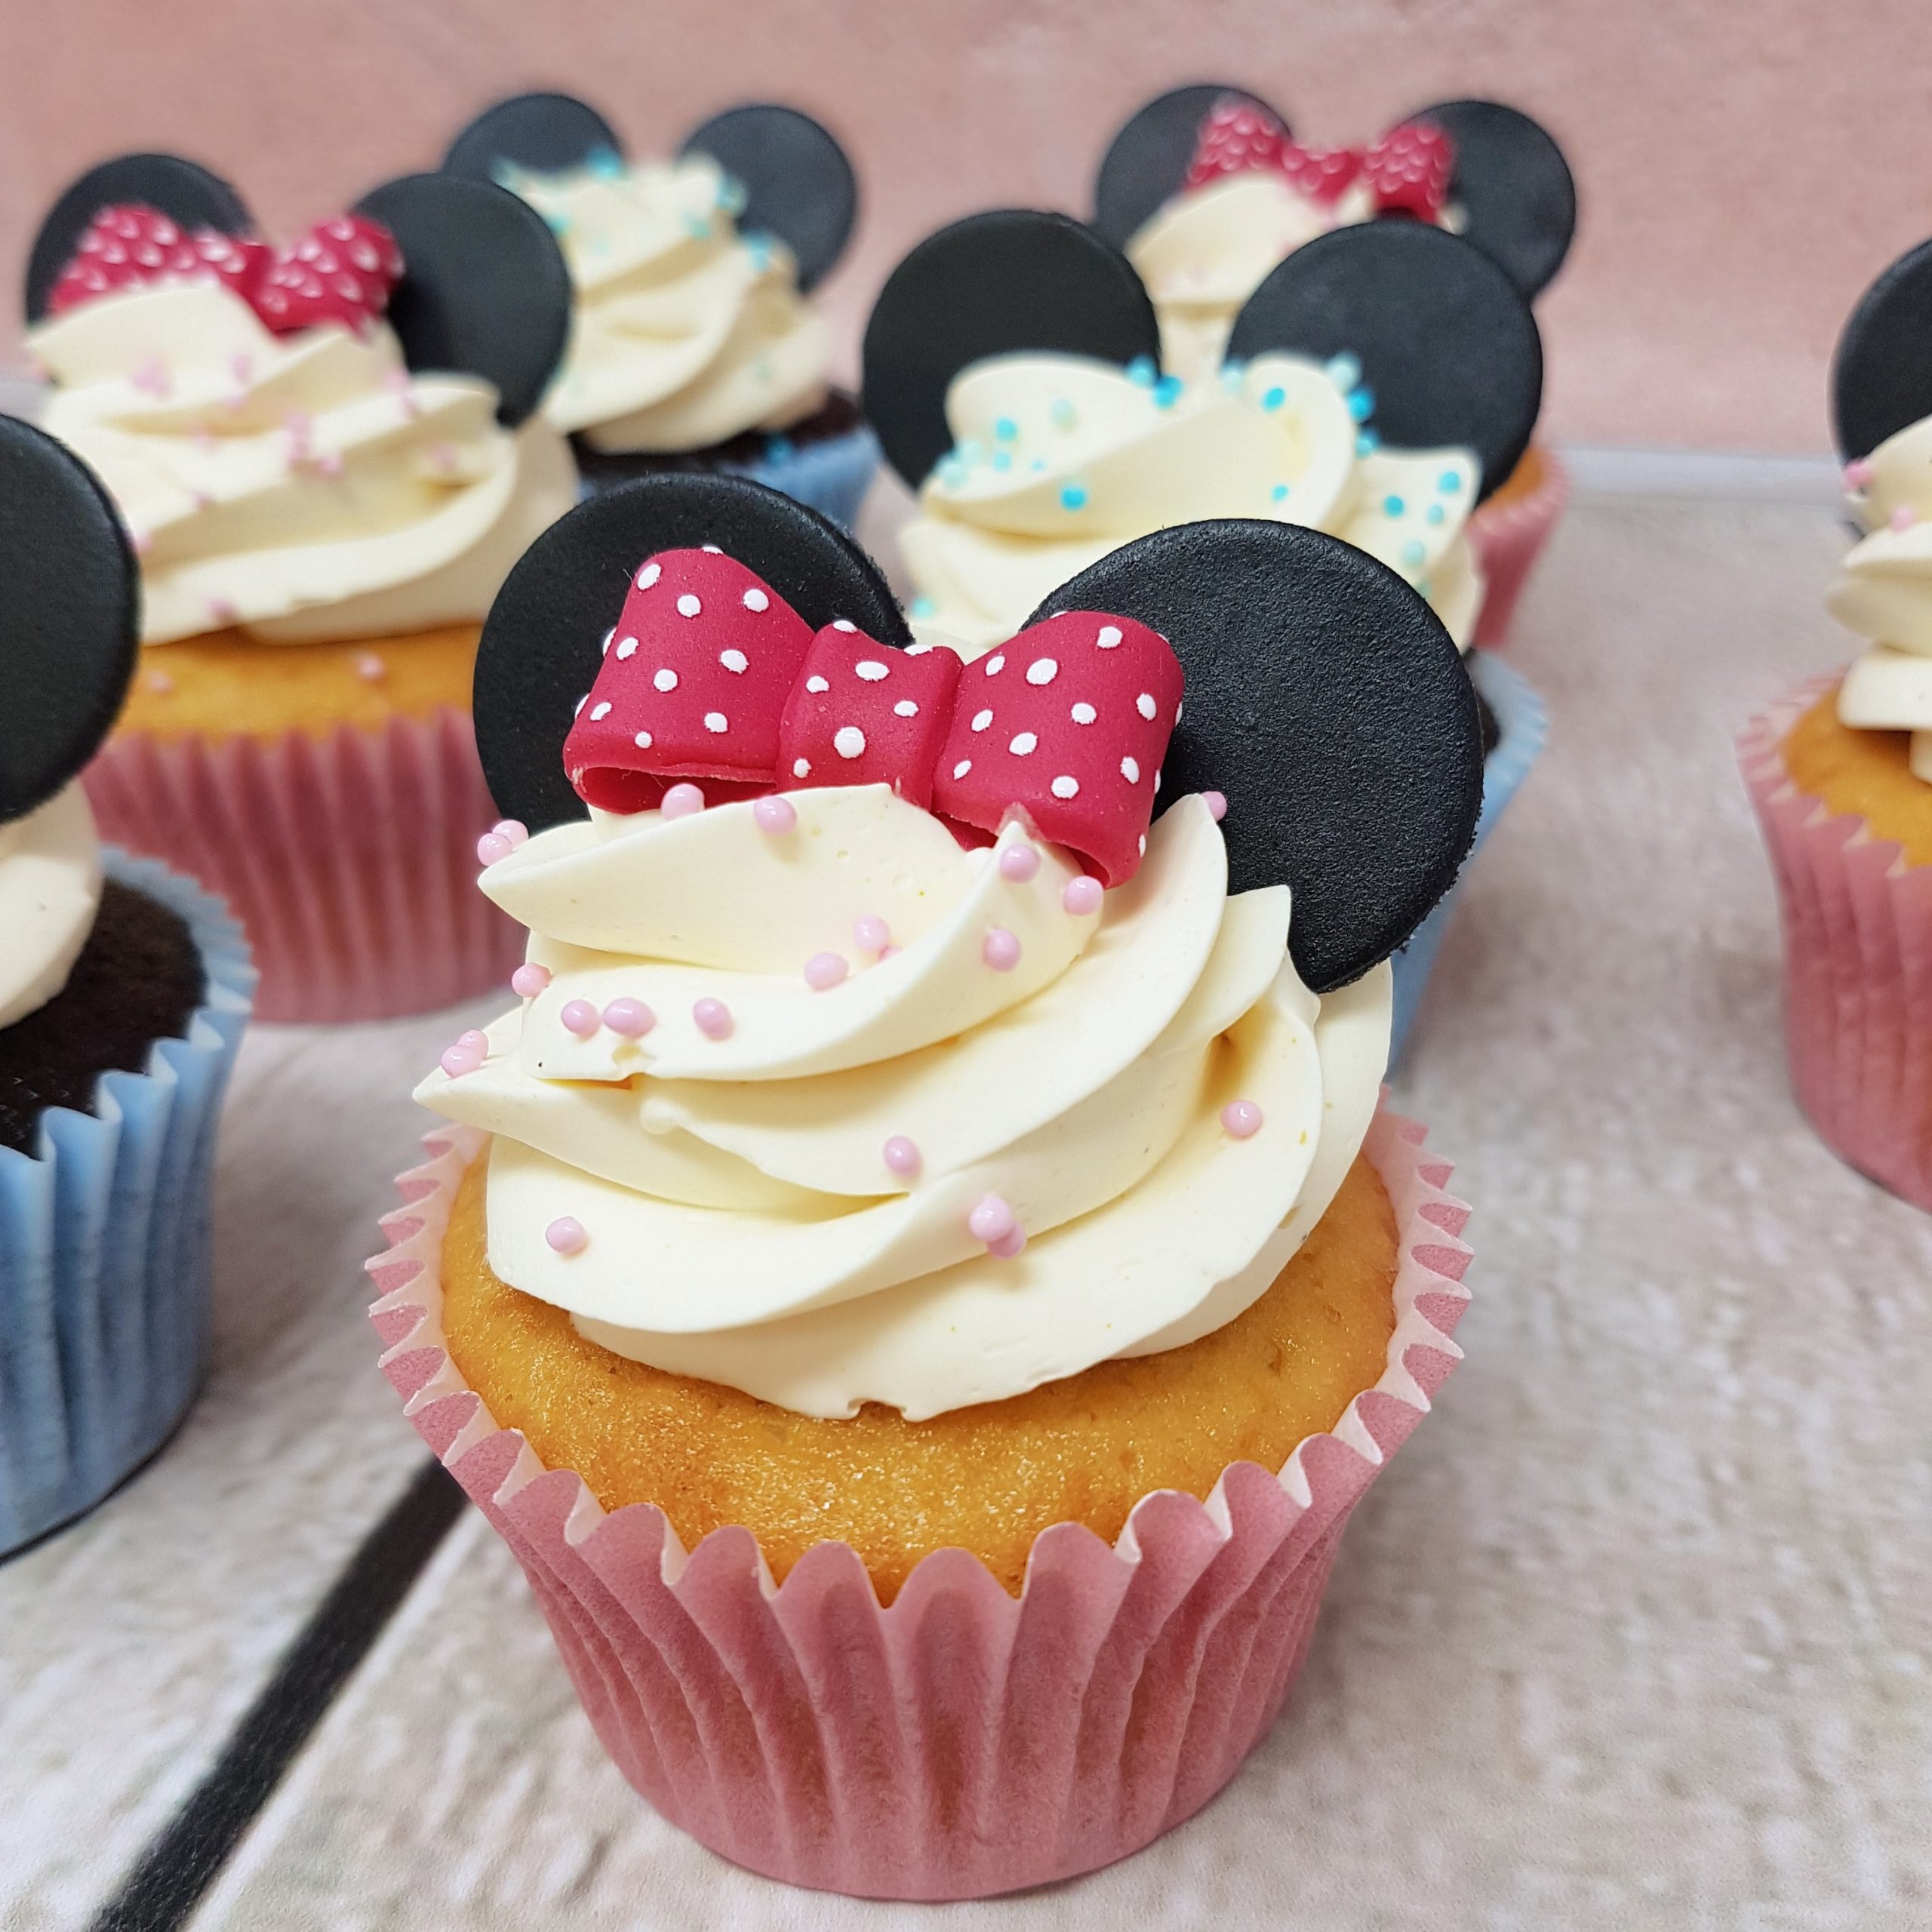 Mickey Minnie cupcakes